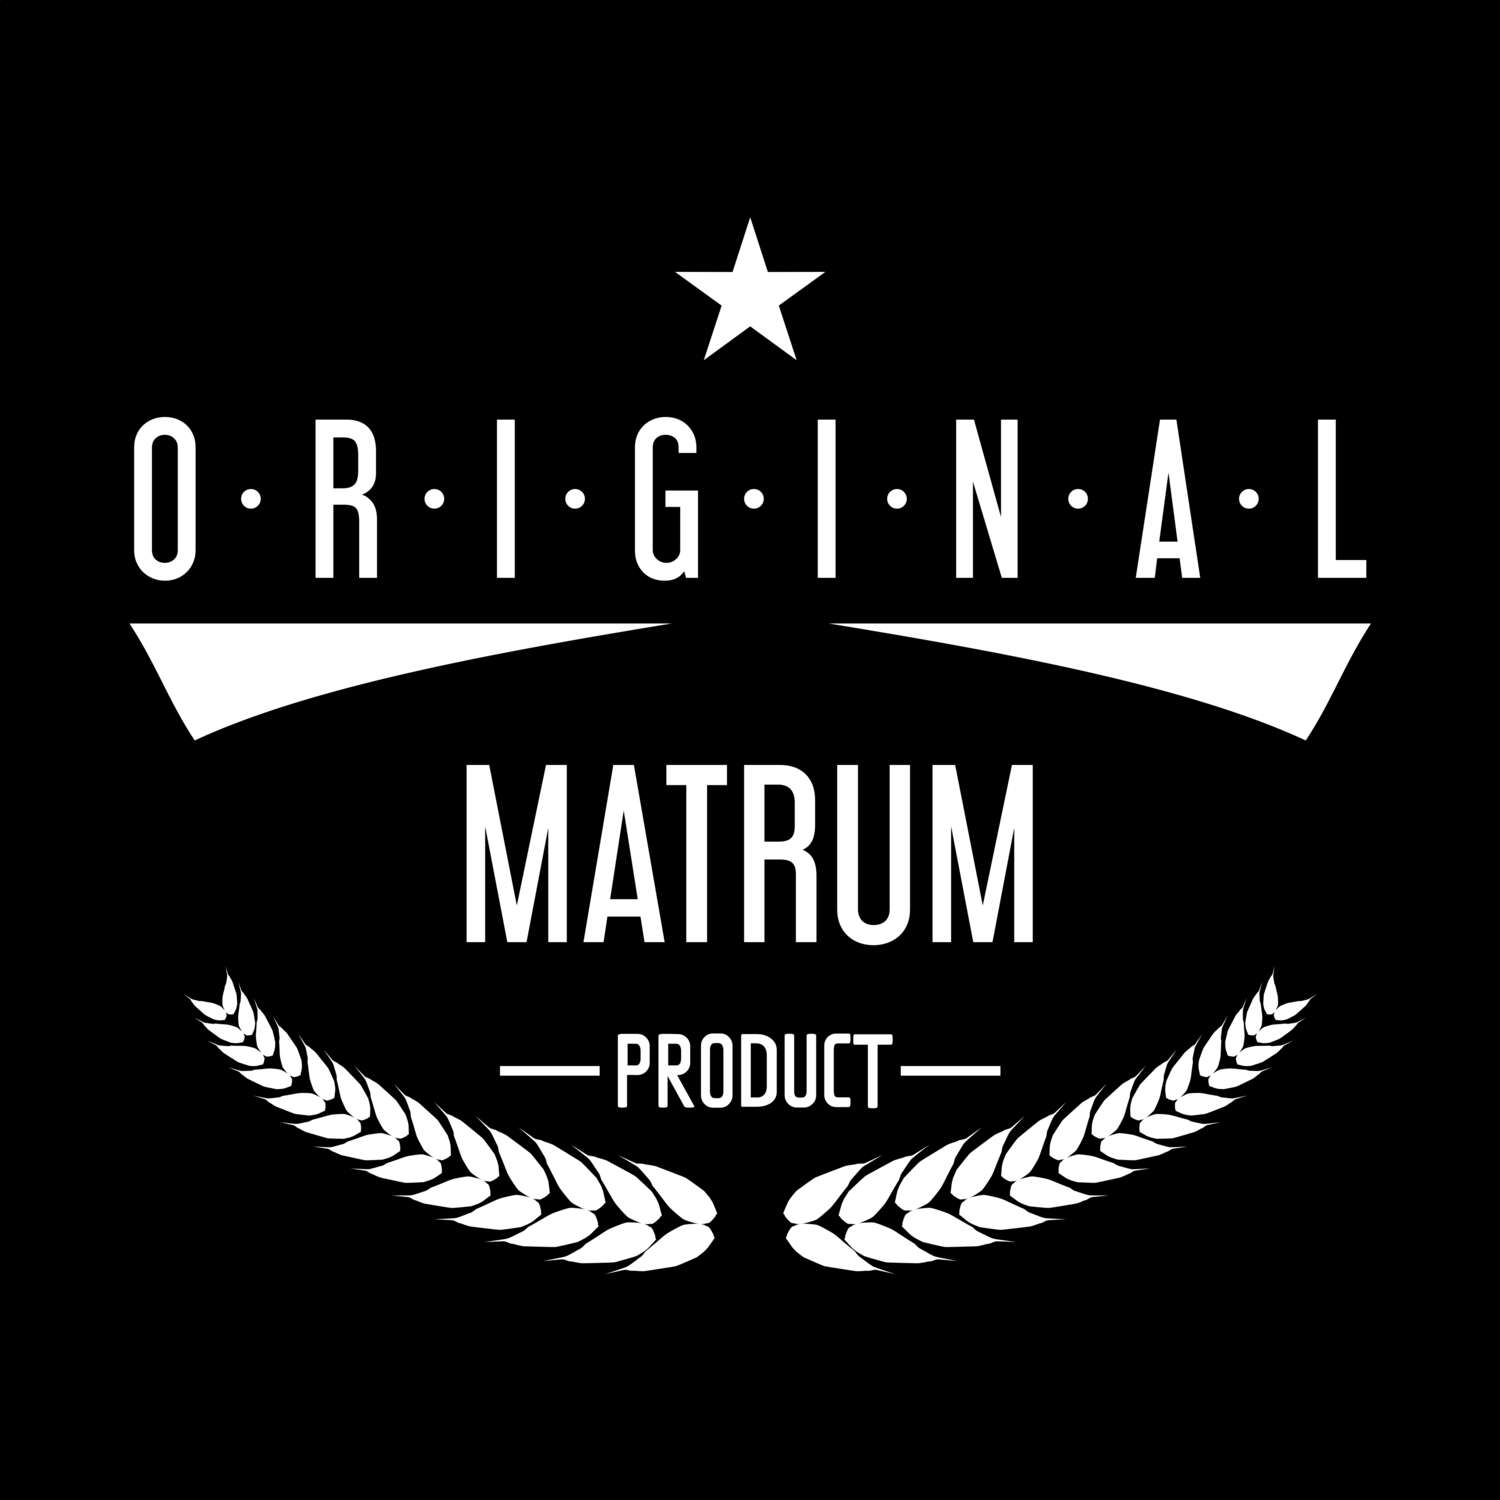 Matrum T-Shirt »Original Product«